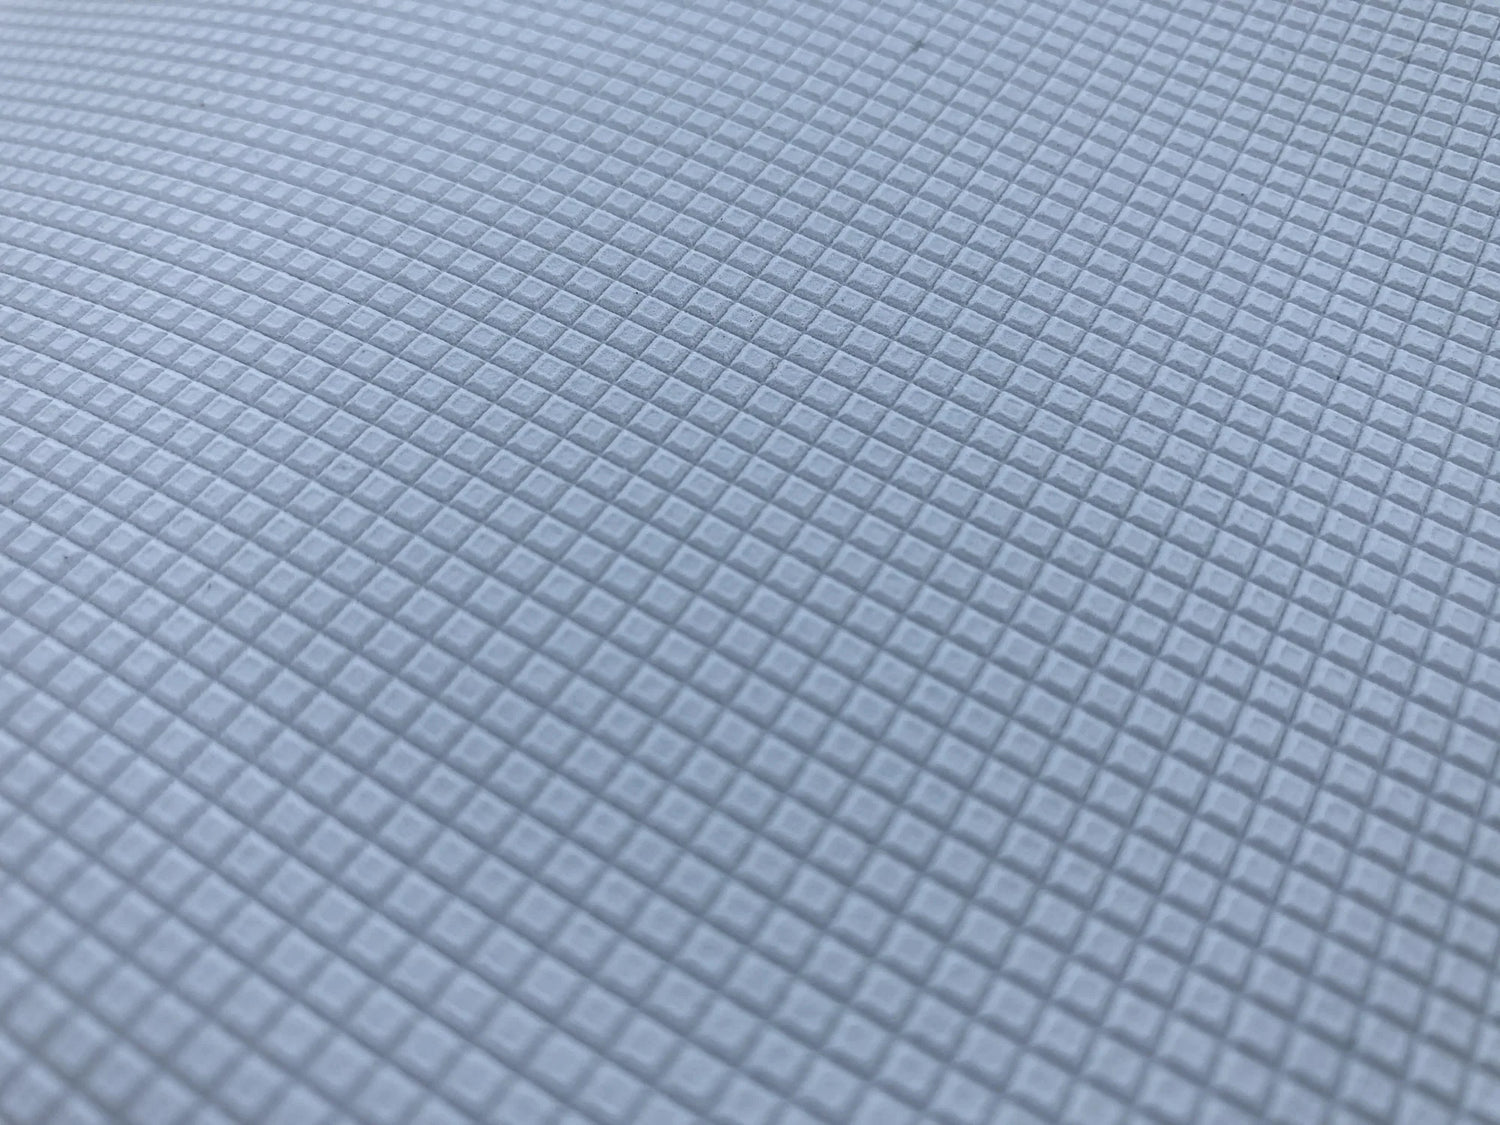 Non-slip floor mat available